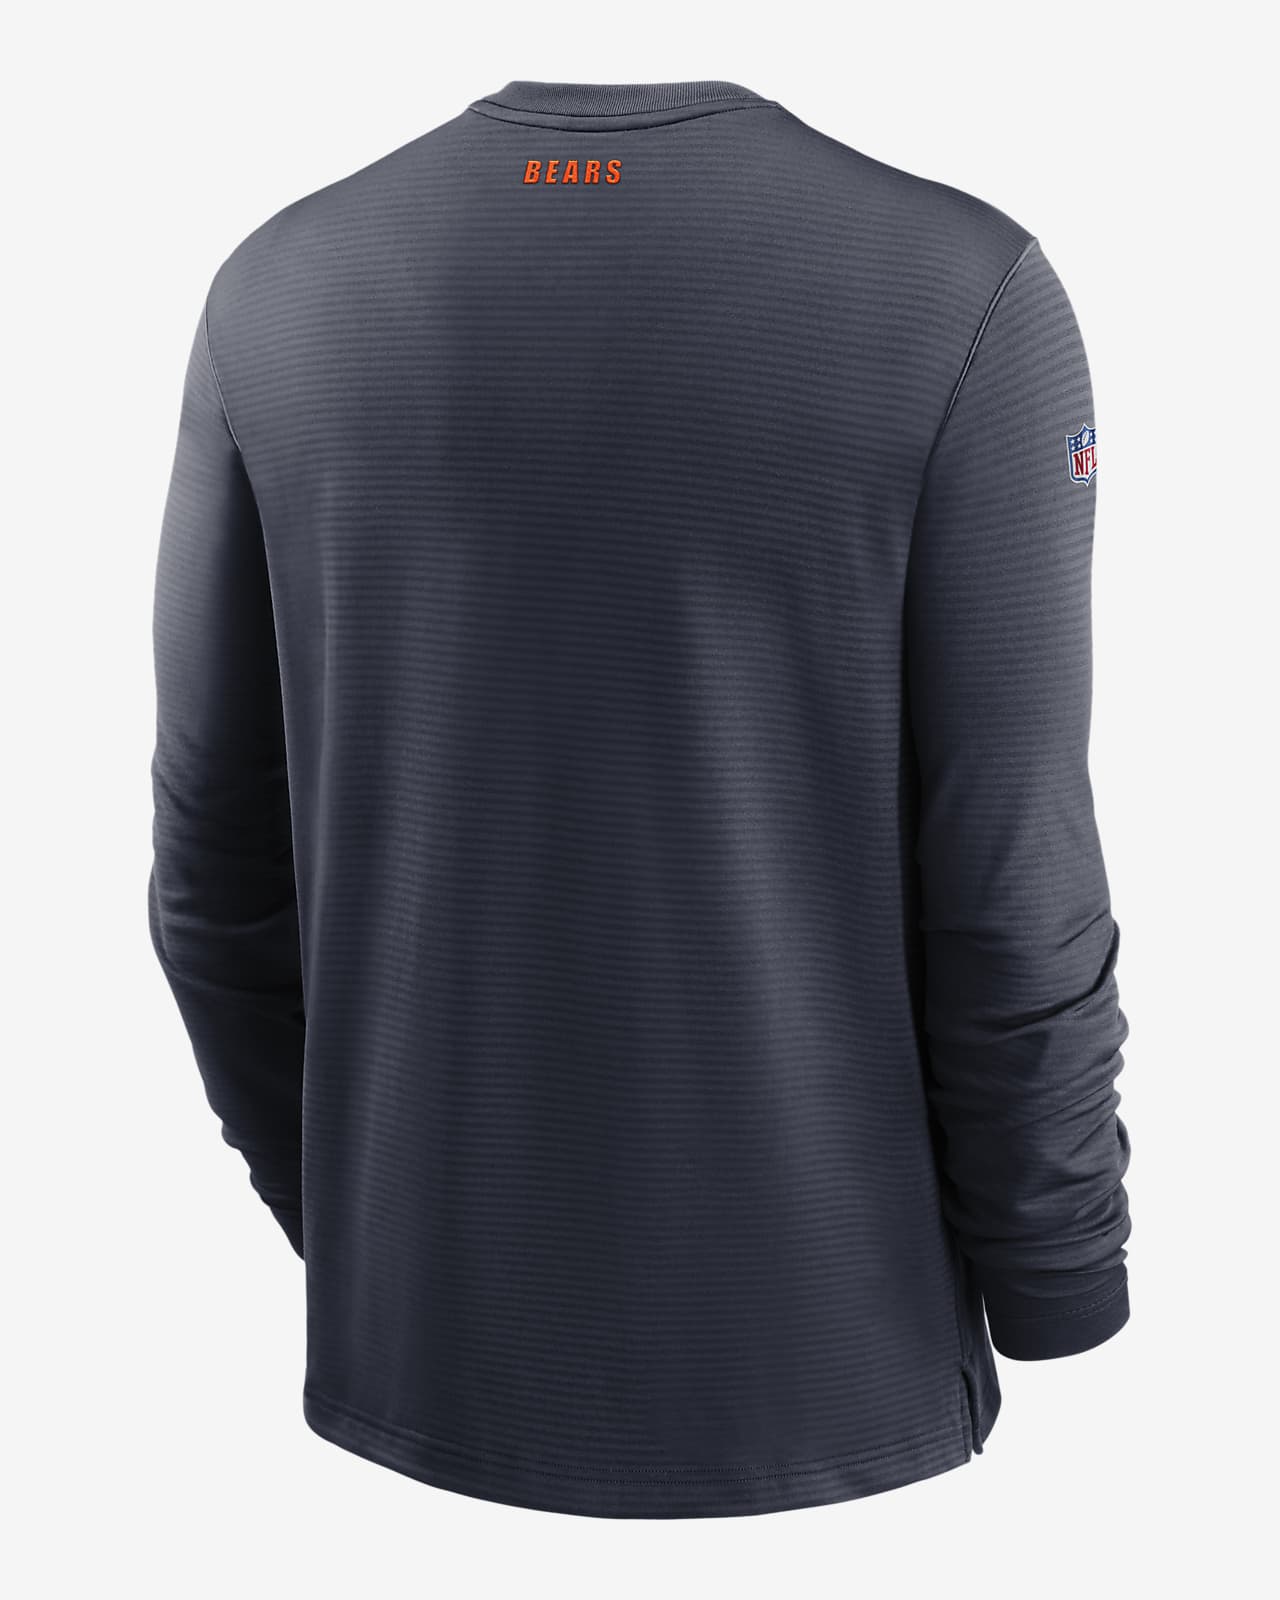 Camiseta de manga larga para hombre Nike Dri-FIT (NFL Bears). Nike.com